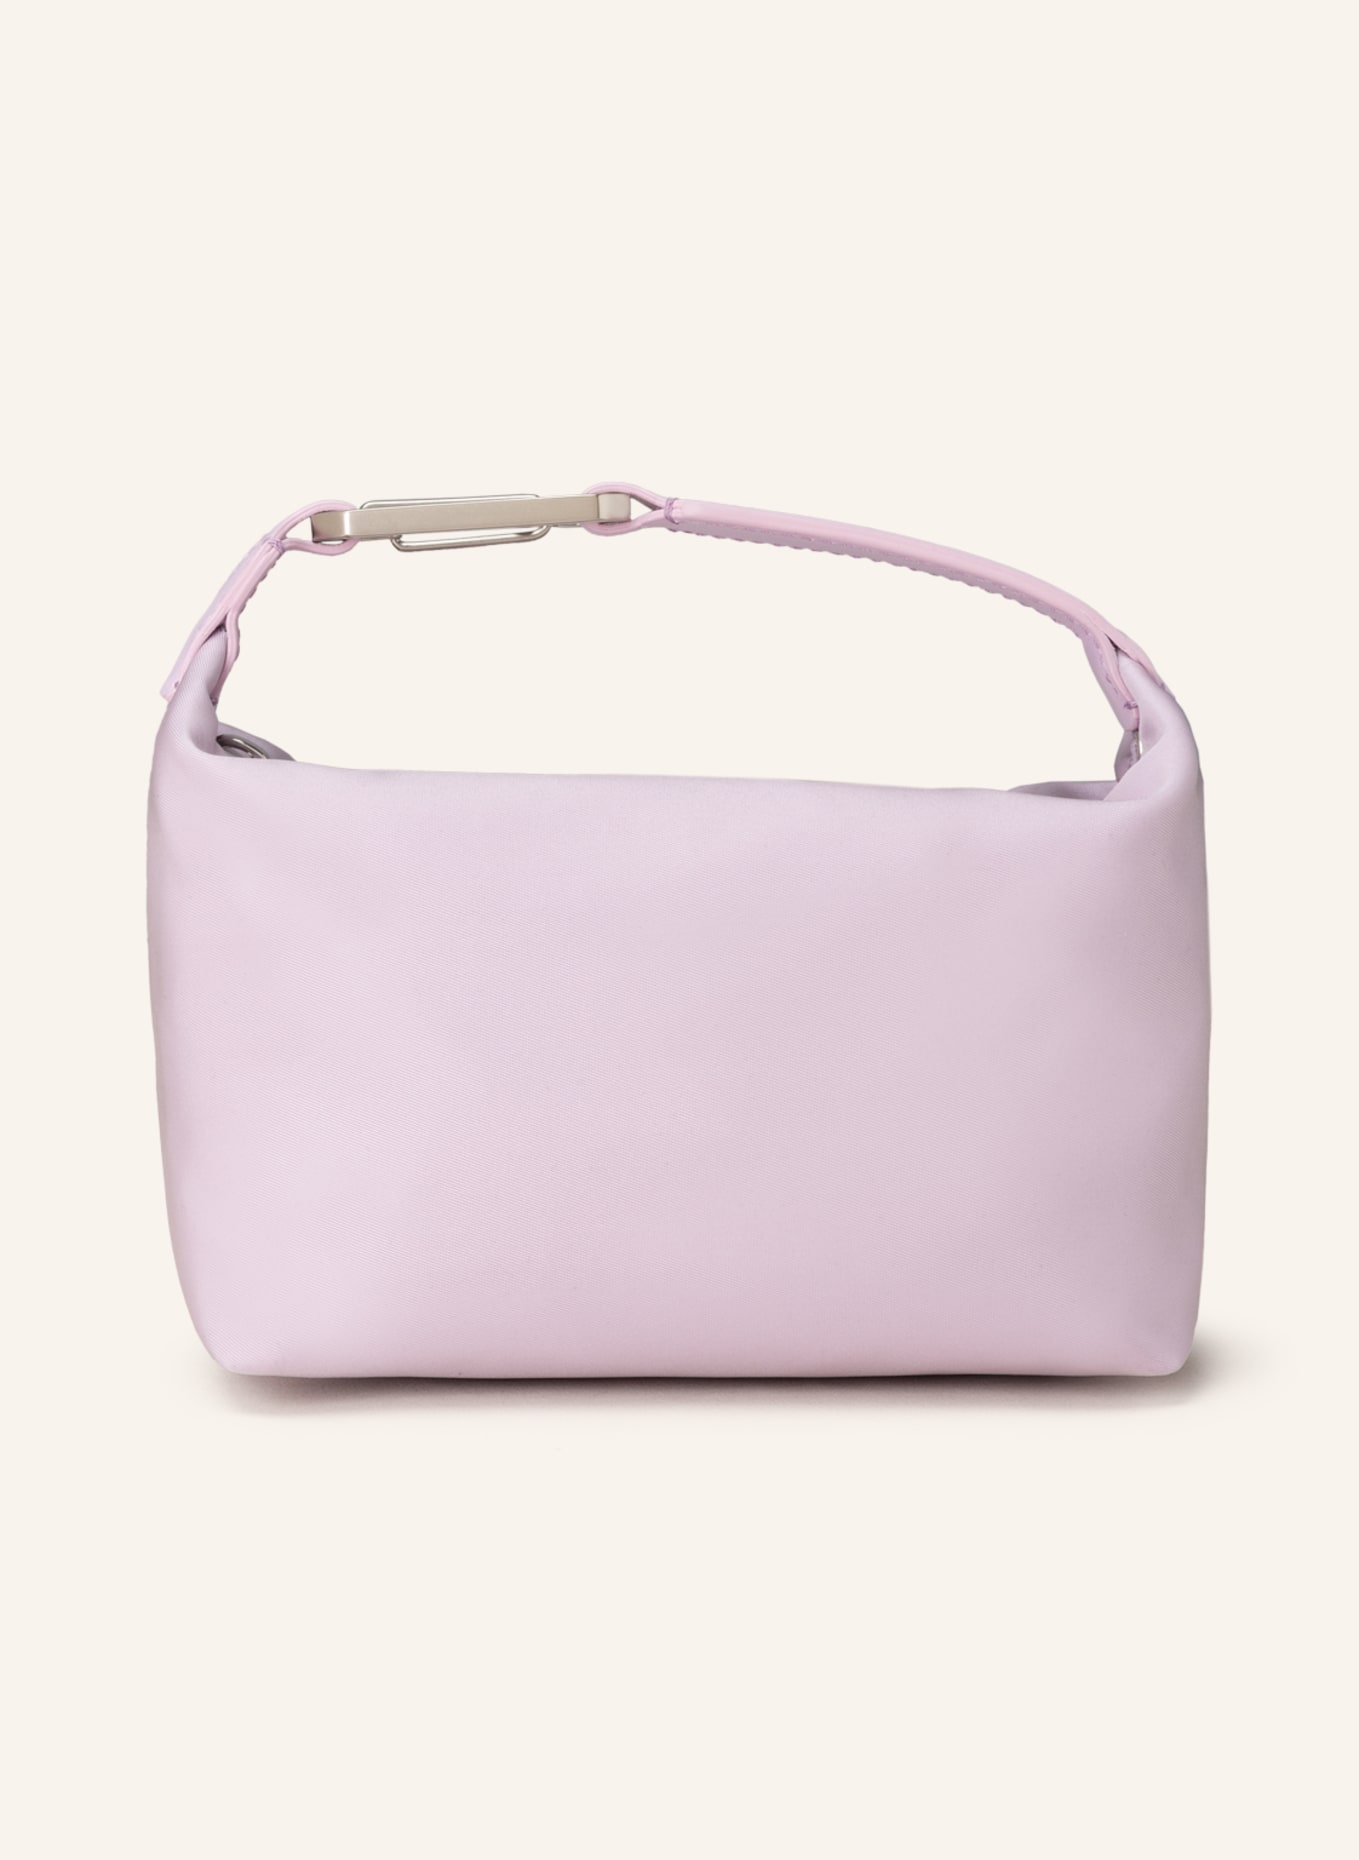 EÉRA Handbag MOONBAG , Color: LIGHT PURPLE (Image 1)